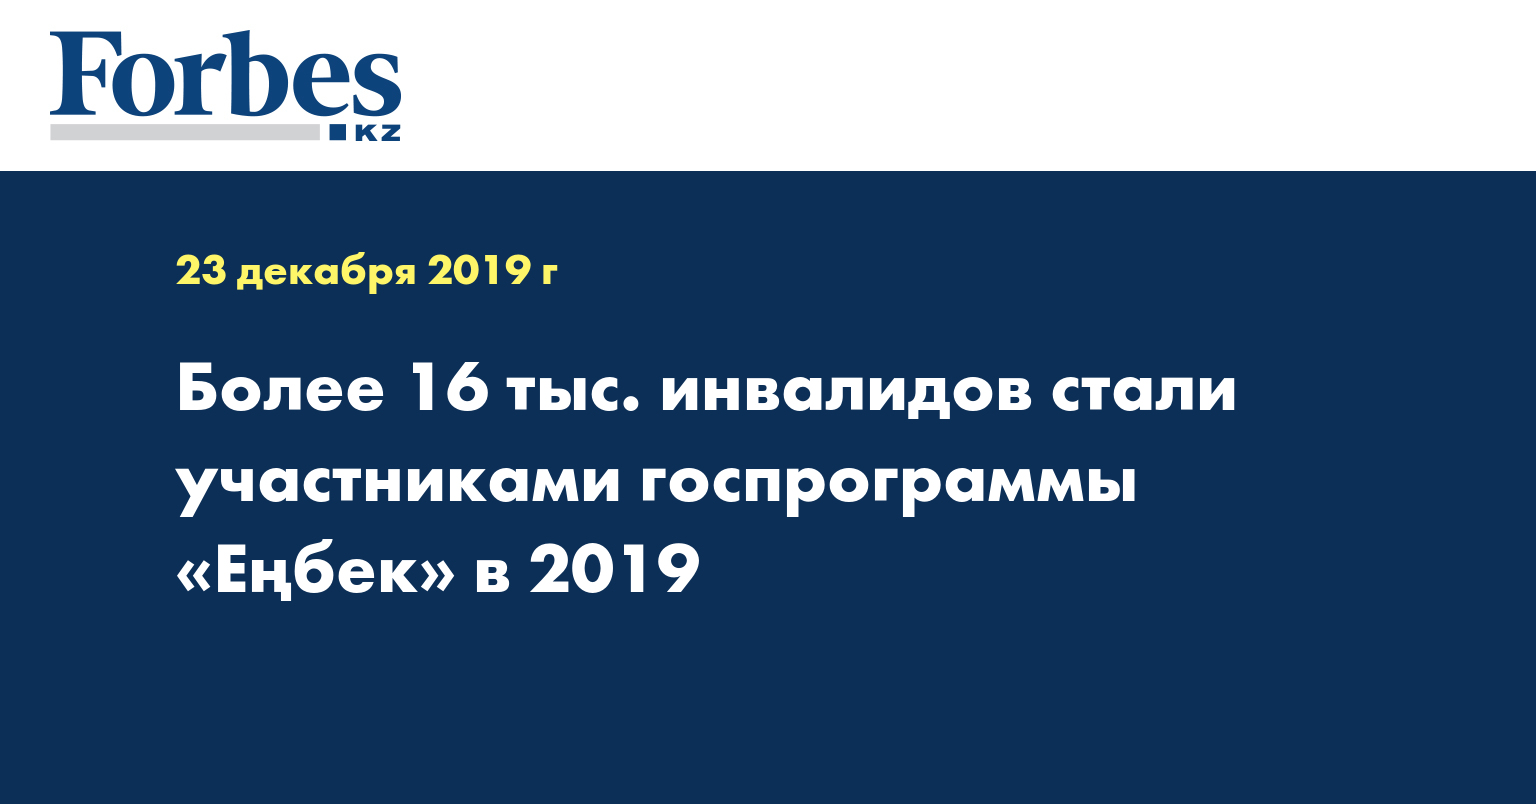 Более 16 тыс. инвалидов стали участниками госпрограммы «Еңбек» в 2019 